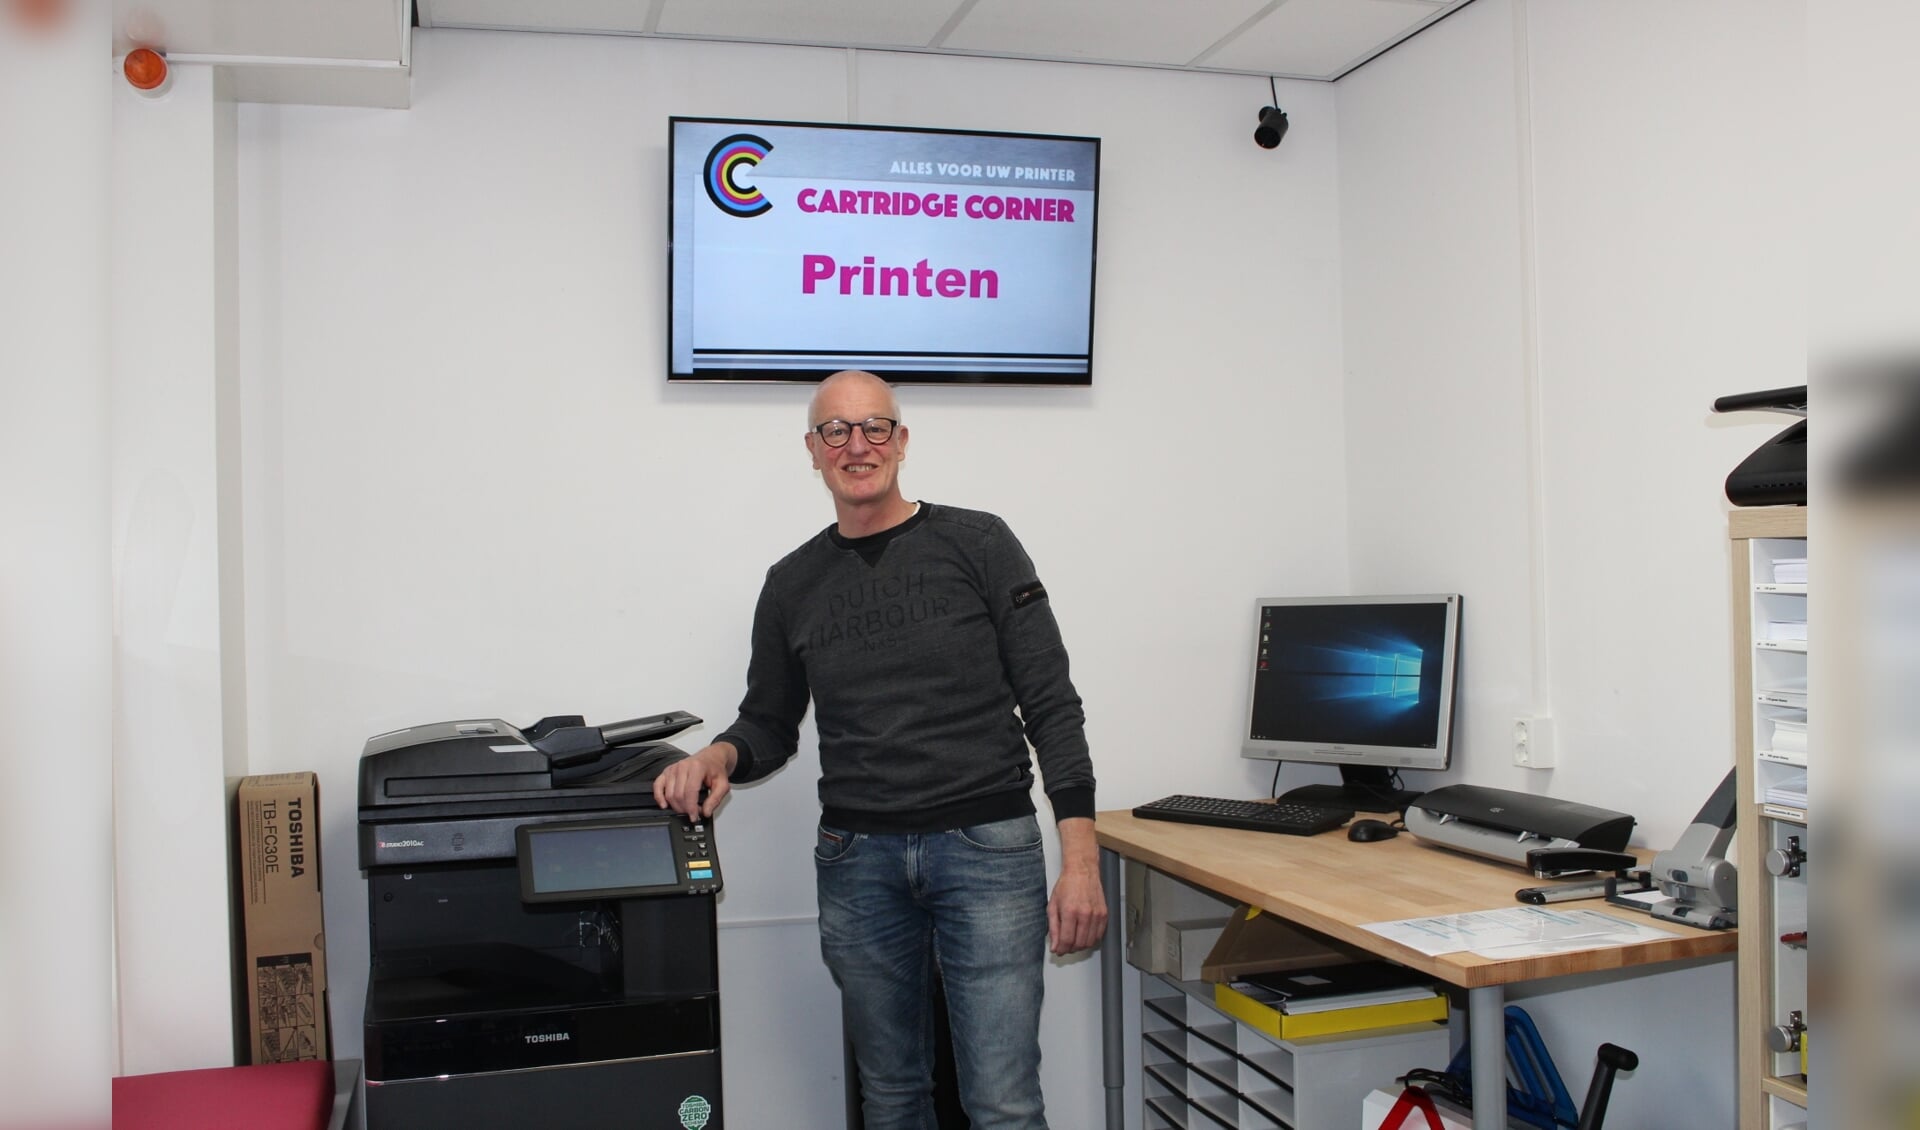 Bij Cartridge Corner kun je nu ook printen, scannen en kopiëren. (Foto: EvE)